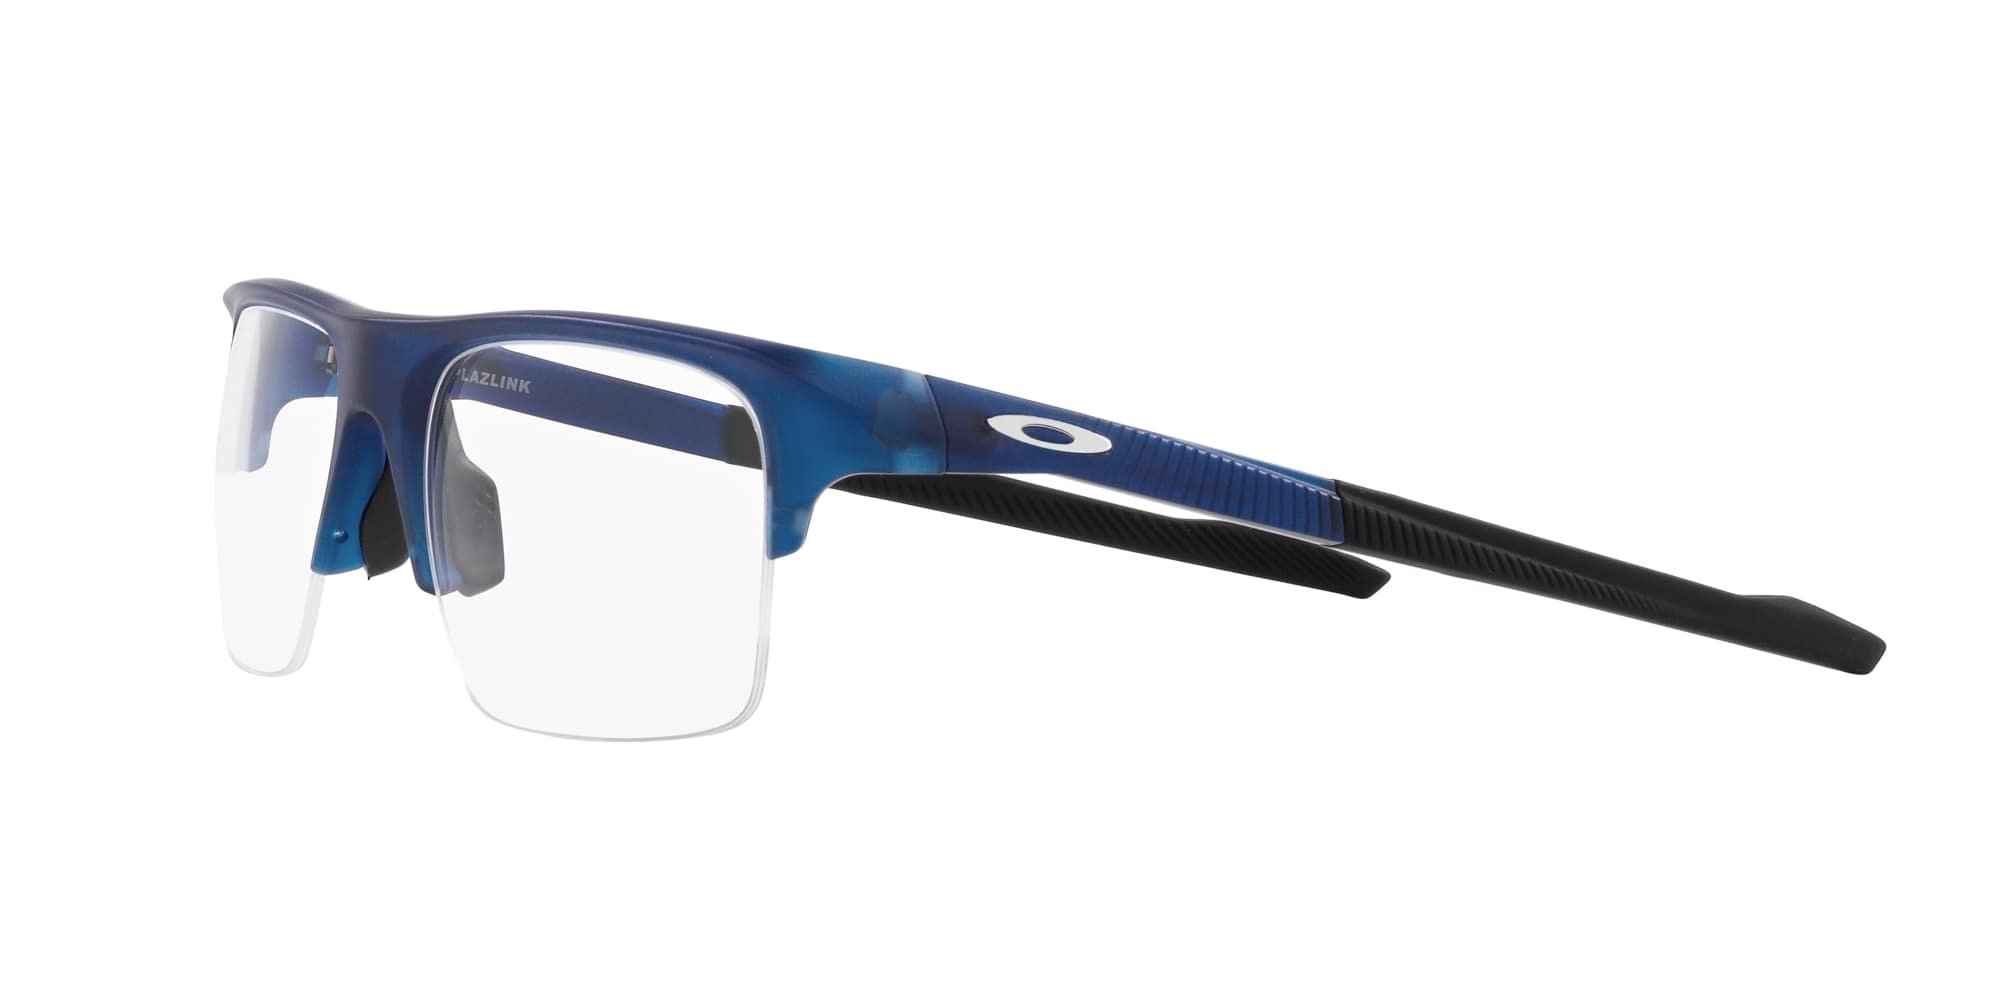 Das Bild zeigt die Korrektionsbrille OX8061 806104 von der Marke Oakley  in  matt blau transluzent